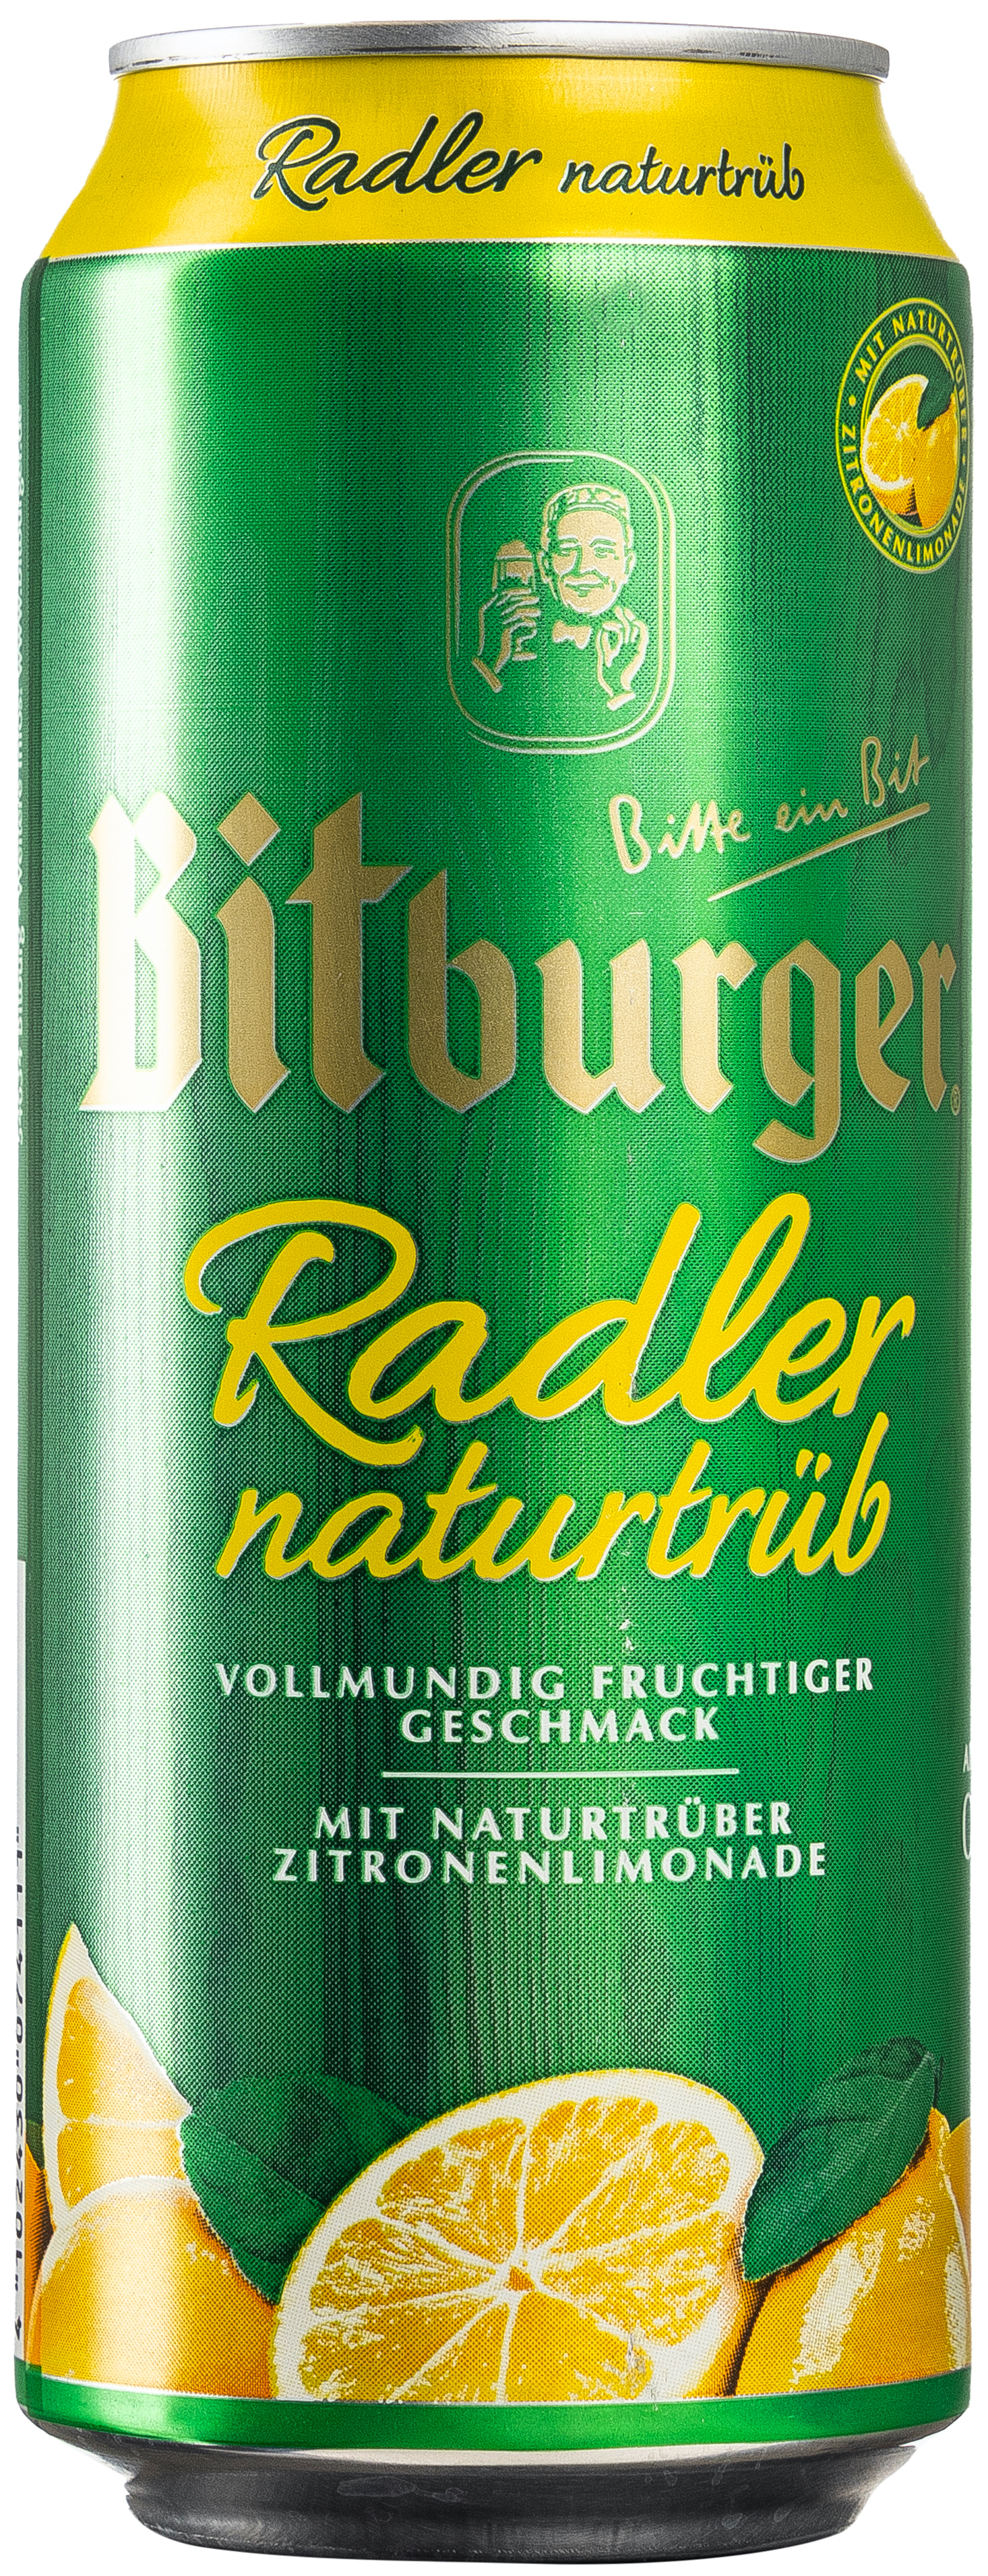 Bitburger Radler naturtrüb 0,5L EINWEG